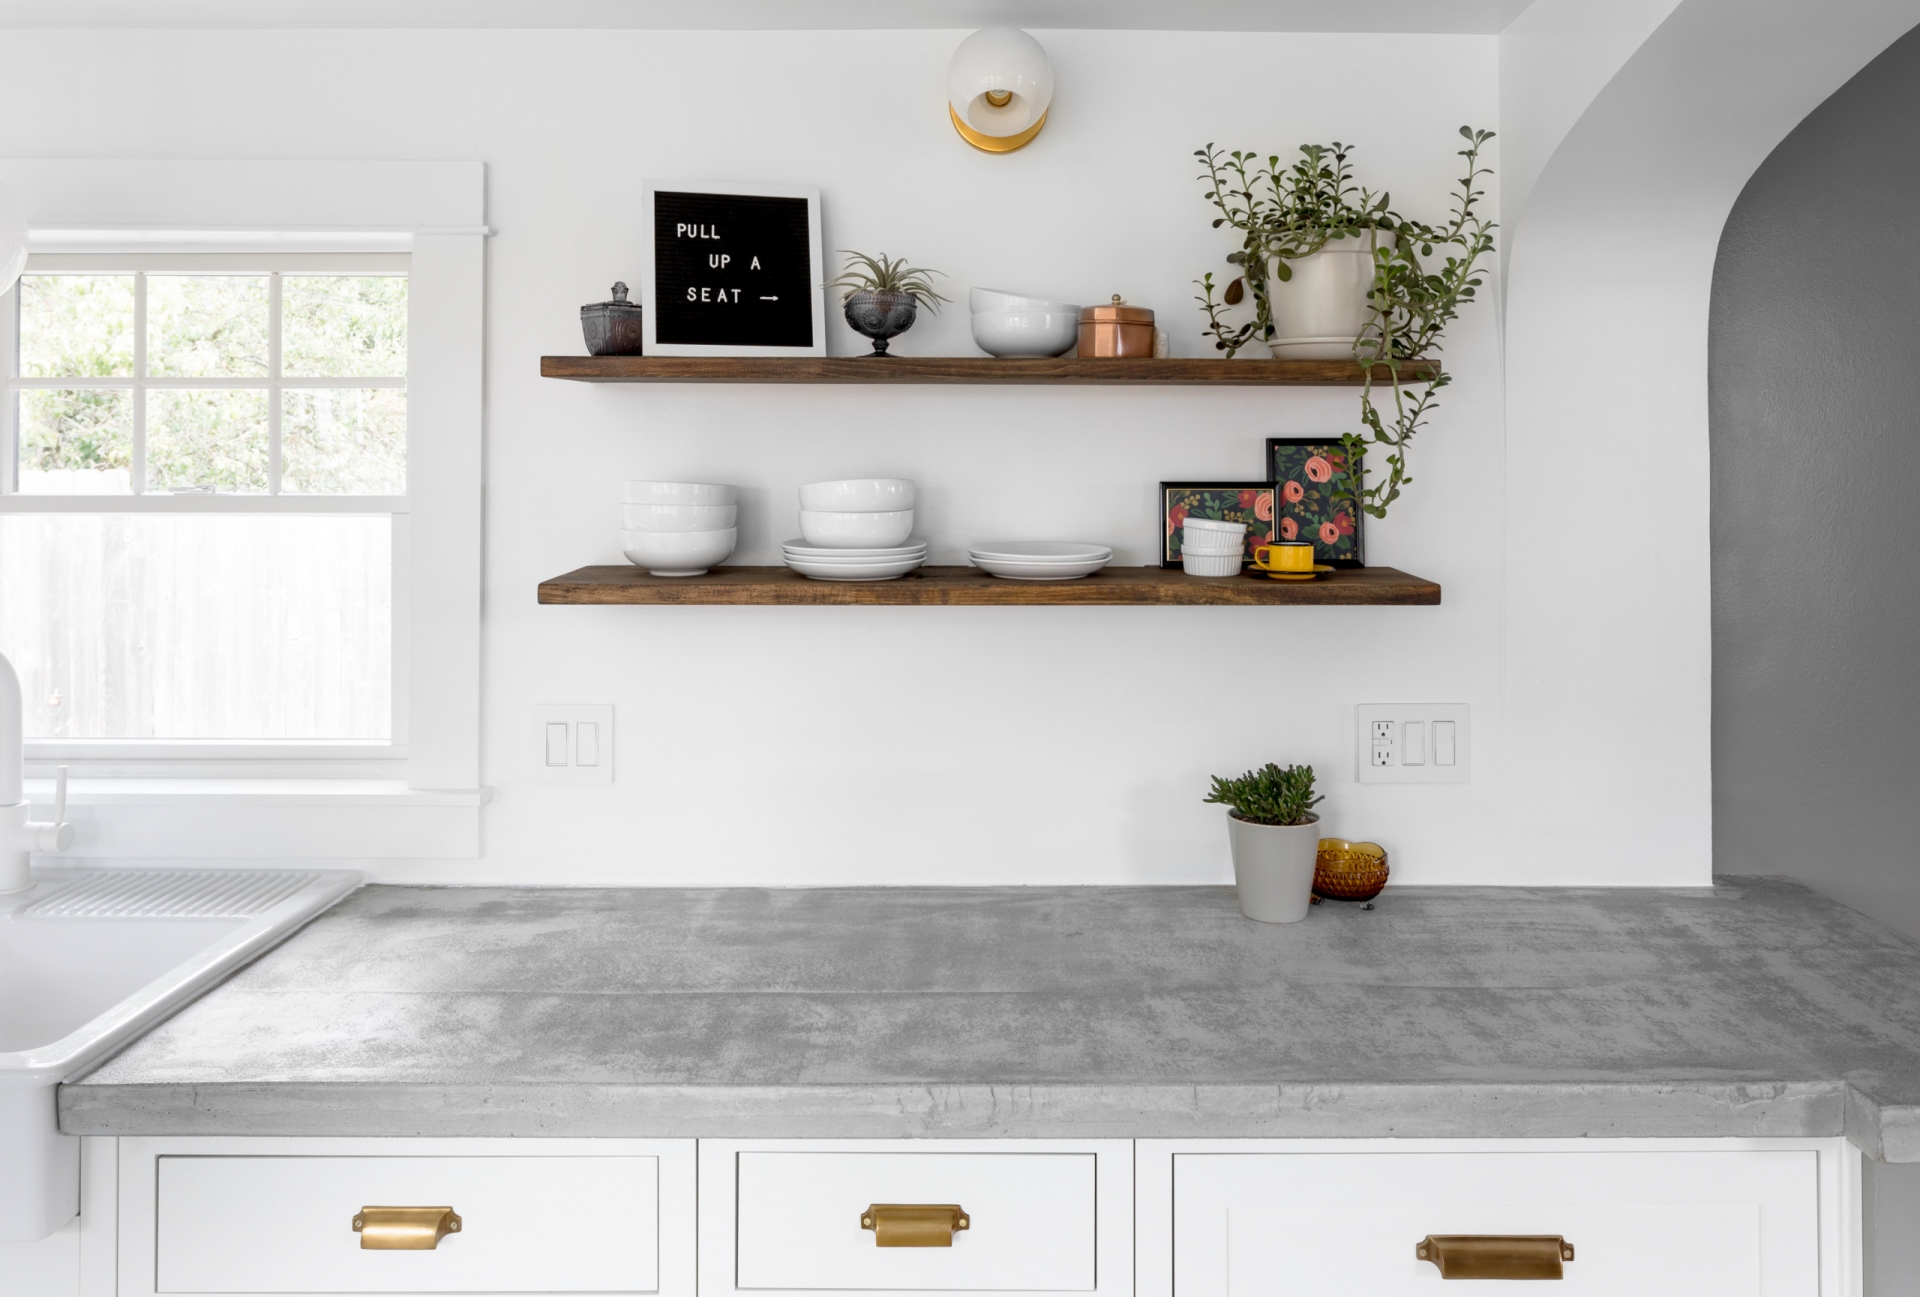 Bê tông là loại vật liệu có vẻ ngoài tối giản, dễ vệ sinh và khả năng chịu nhiệt cao nên cực kỳ thích hợp để ứng dụng dụng cho mặt bàn trong phòng bếp.